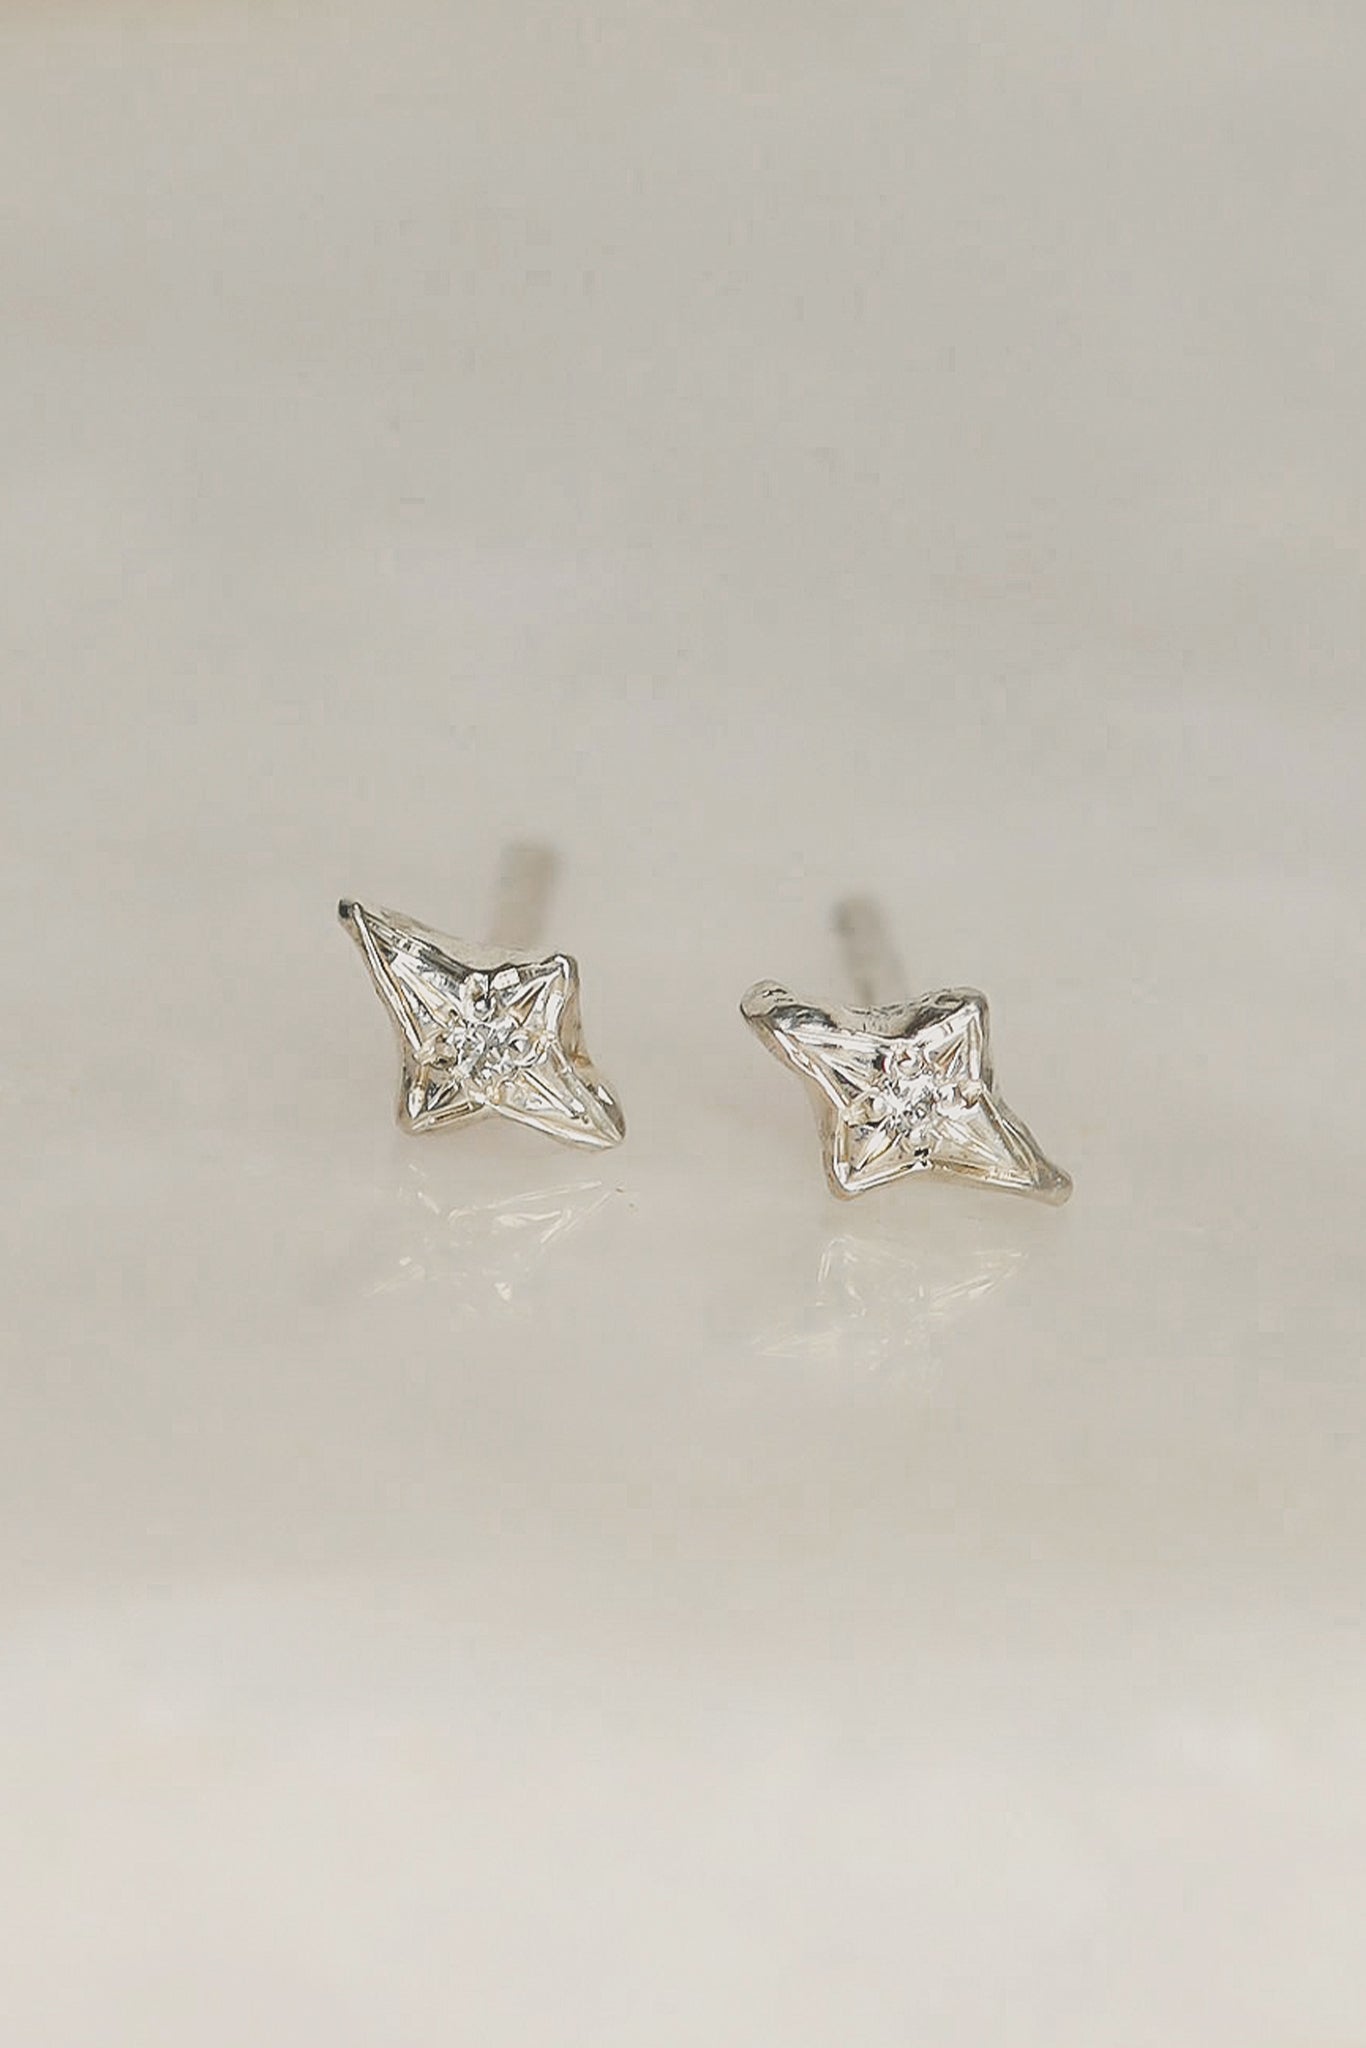 sterling-silver-star-earrings-dainty-diamond-studs-galaxy-jewelry